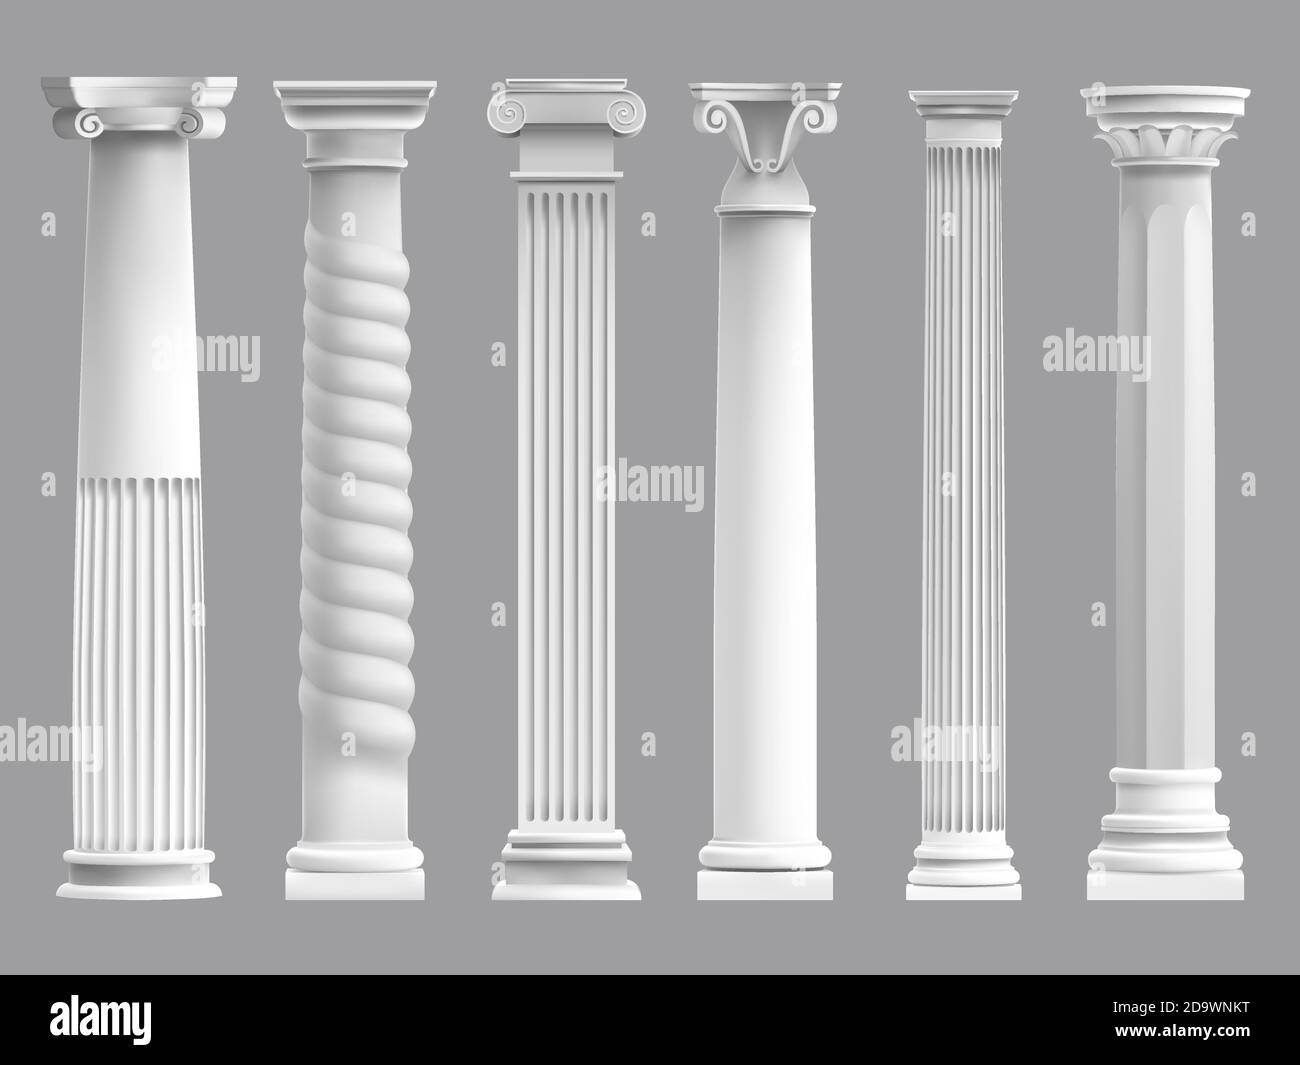 Antiche colonne greche. Antica colonna greca, colonne storiche della cultura romana. Set di illustrazioni vettoriali per colonne architettoniche classiche Illustrazione Vettoriale